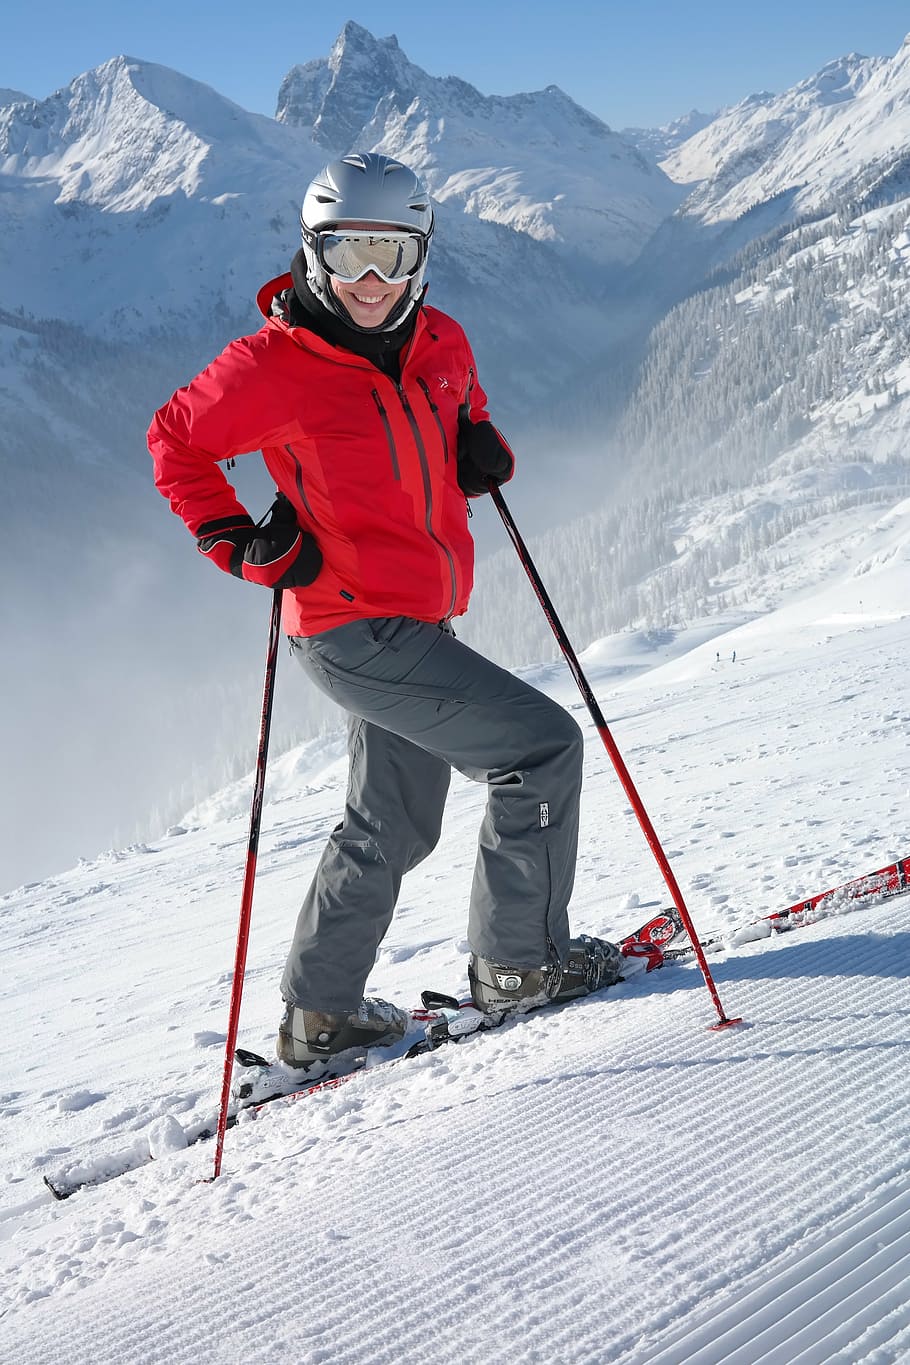 pessoa, vermelho, jaqueta, esqui na neve, exploração, bastões de esqui, dia, esquiador, esqui, pista de esqui